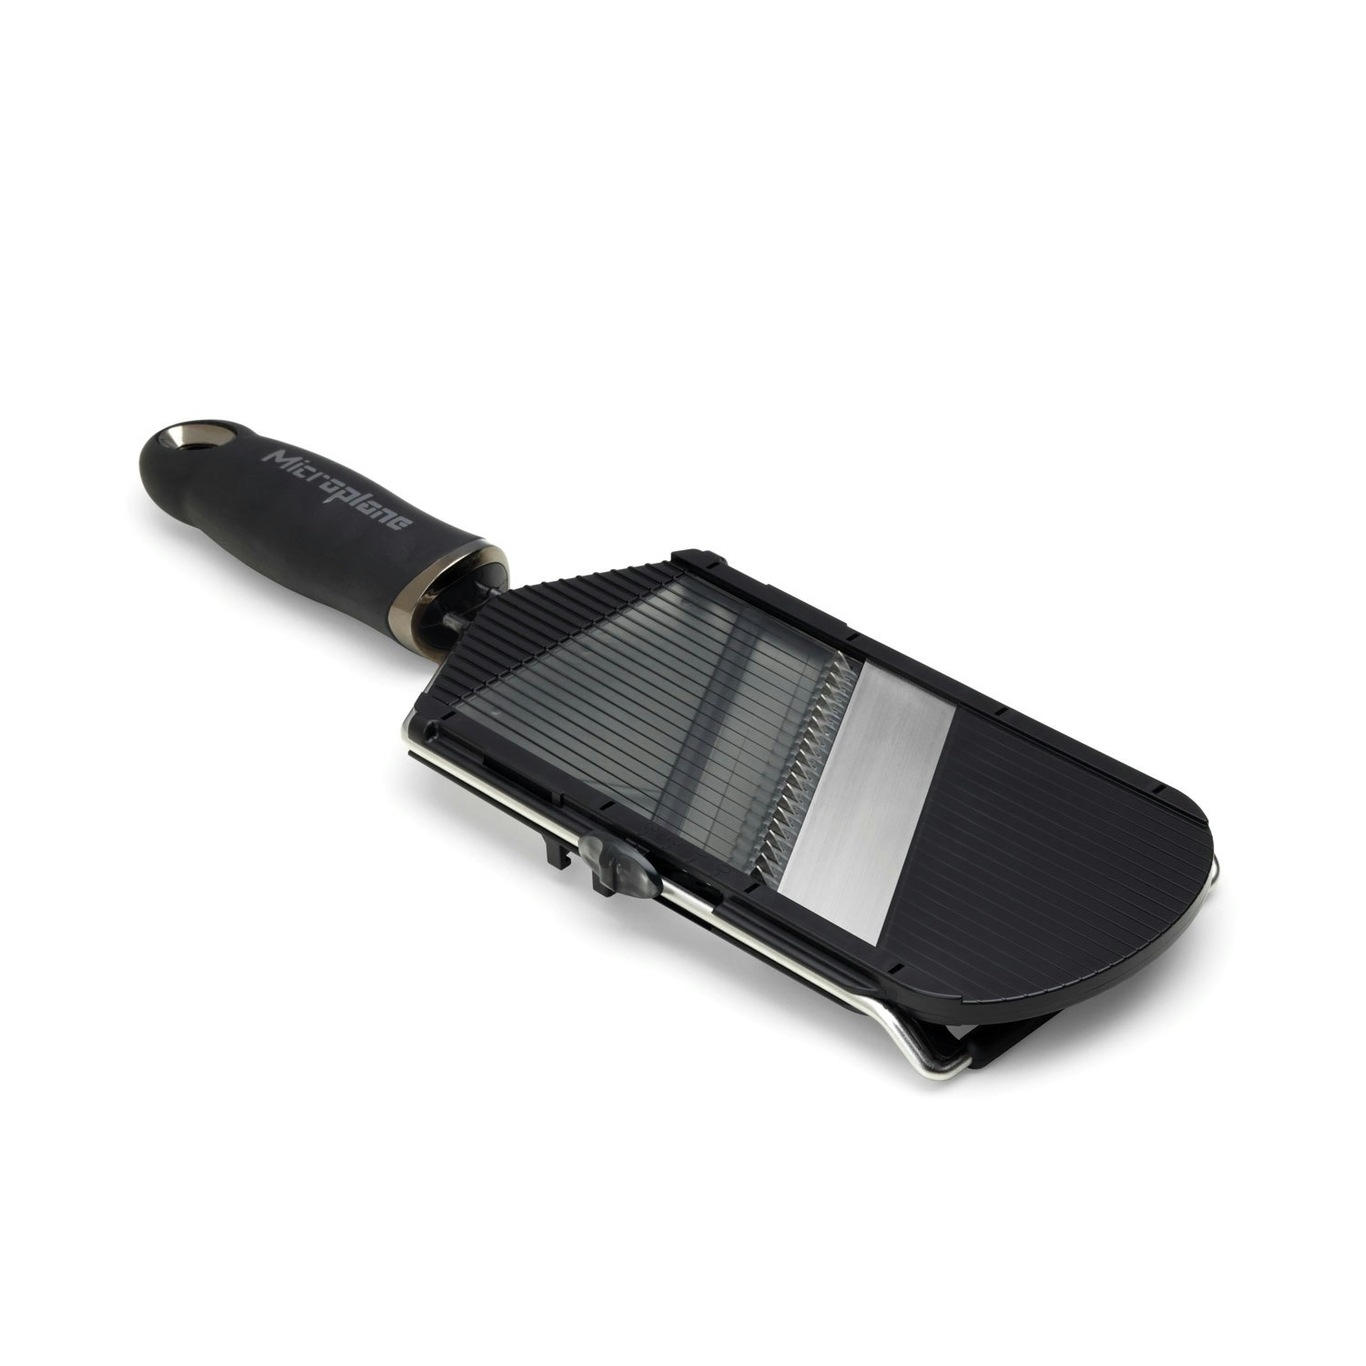 Kyocera Mandolin Ceramic Blade, Black - Kyocera @ RoyalDesign